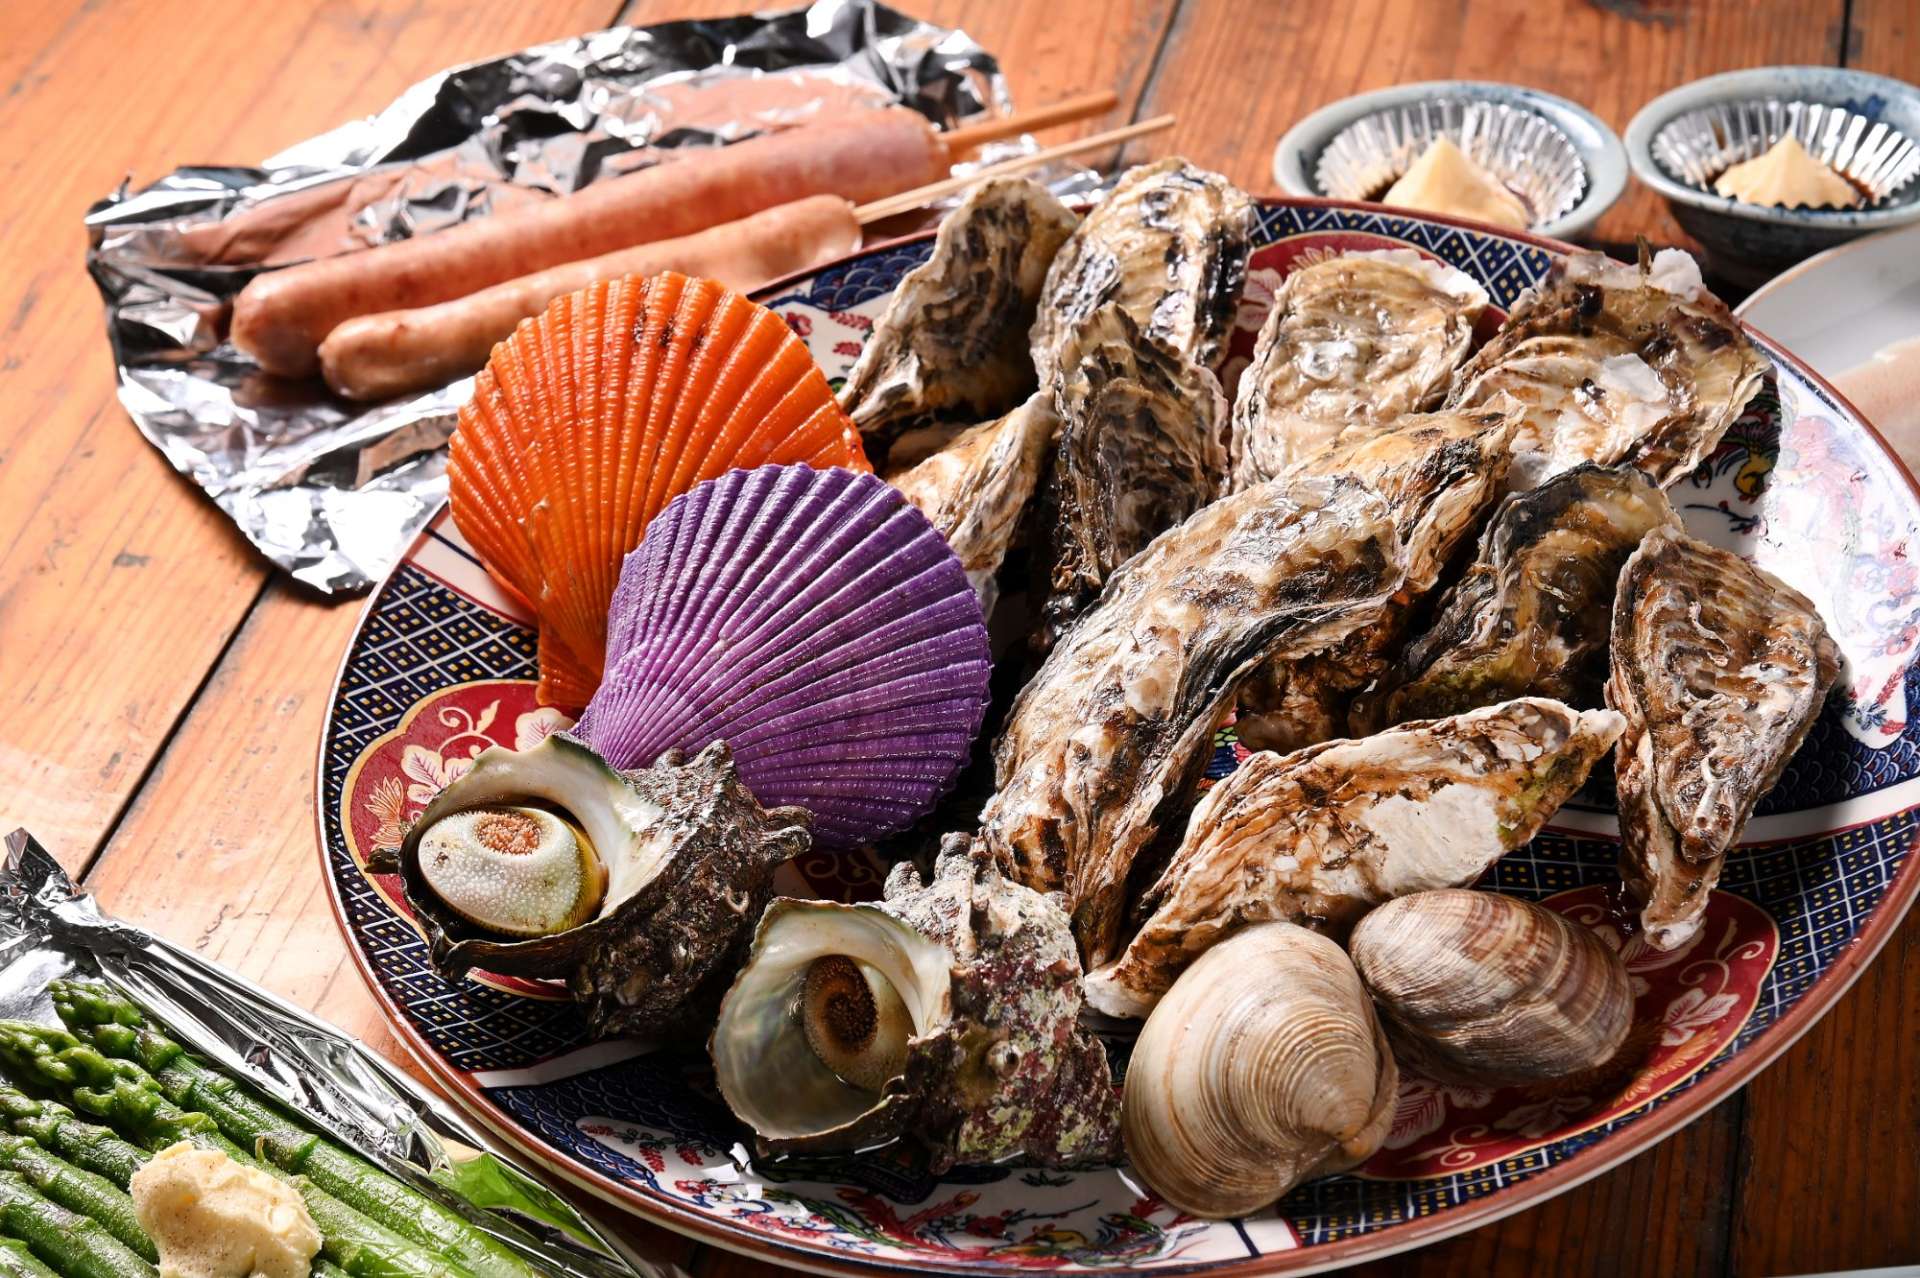 牡蠣以外の海産物やサイドメニューについて